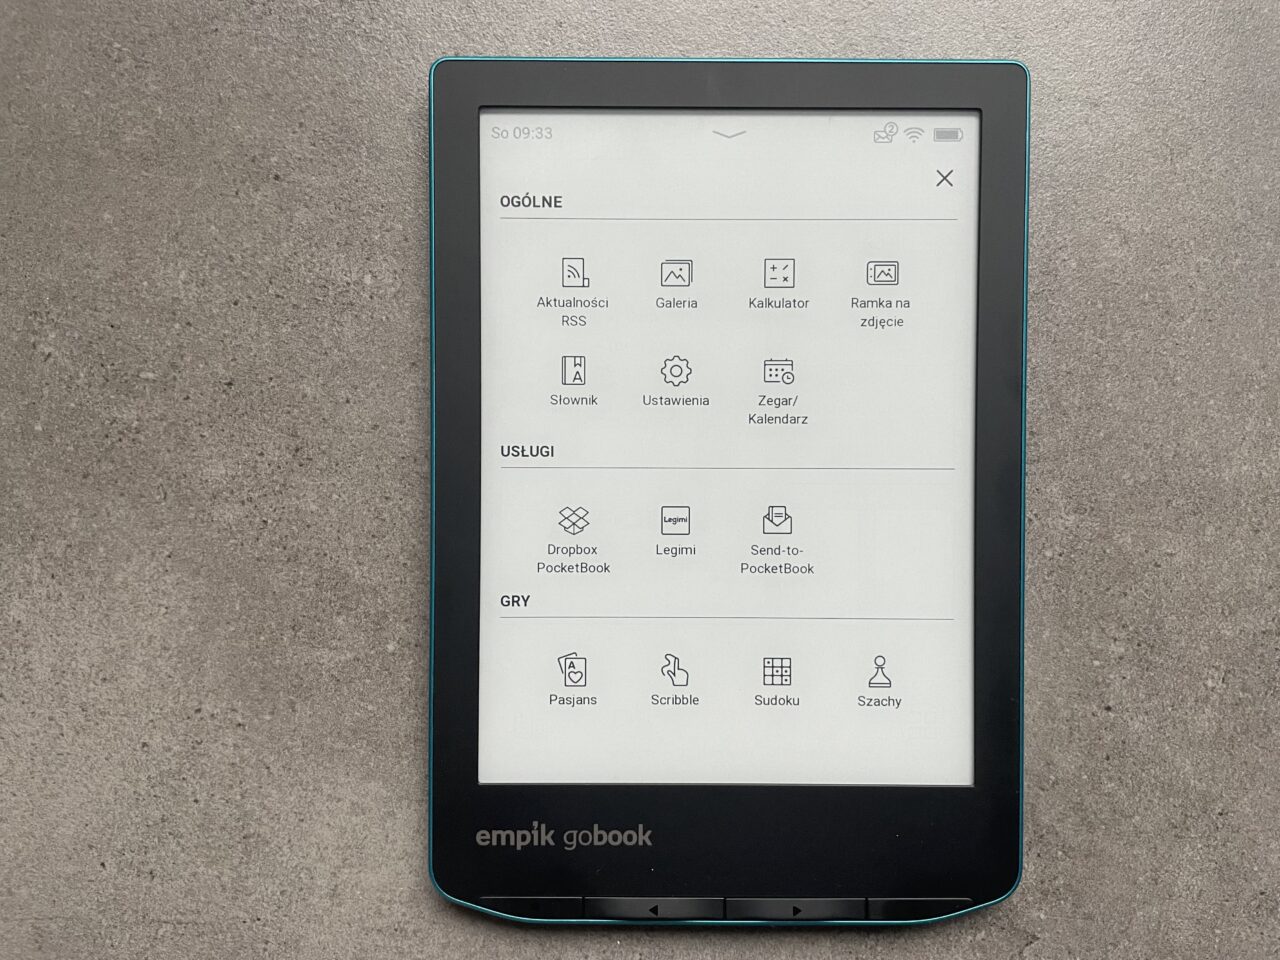 Czytnik e-booków leżący na szarym tle, wyświetlający ekran główny z ikonami aplikacji i funkcji takimi jak galeria, kalkulator i ustawienia.